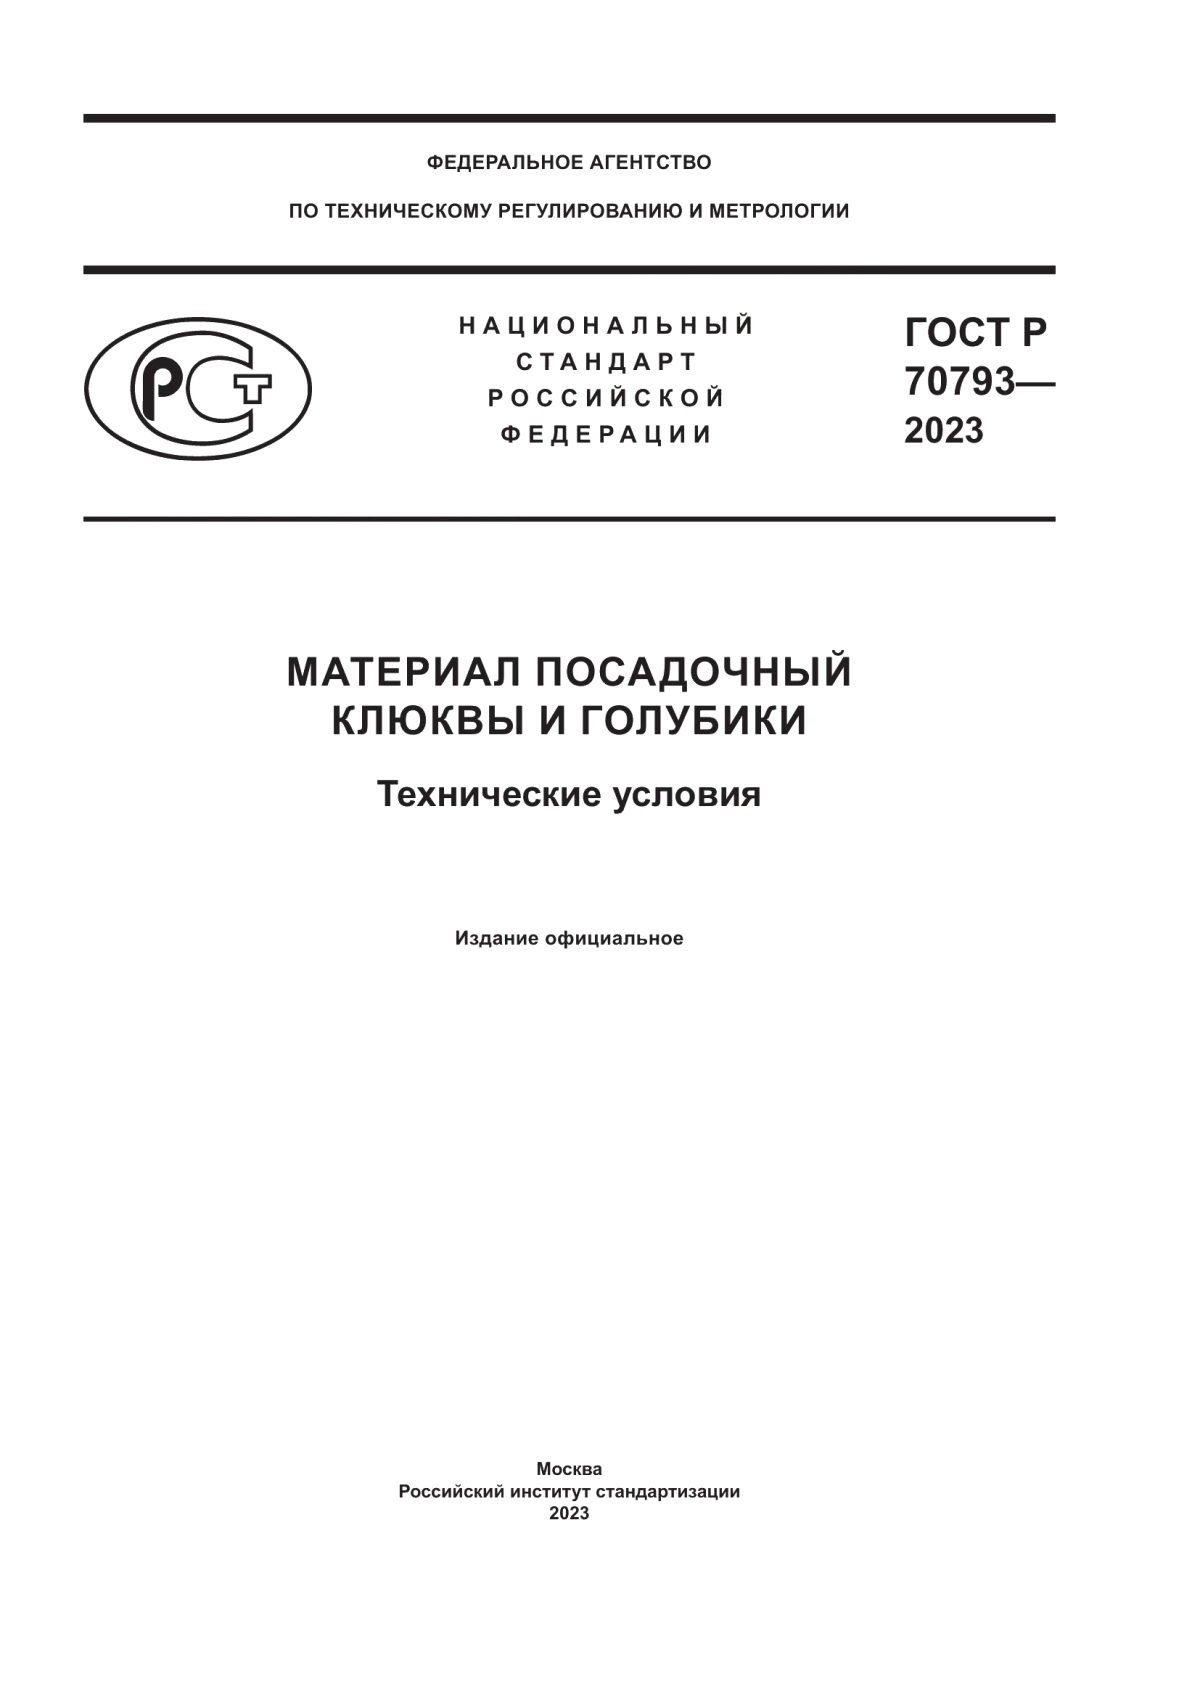 ГОСТ Р 70793-2023 Материал посадочный клюквы и голубики. Технические условия